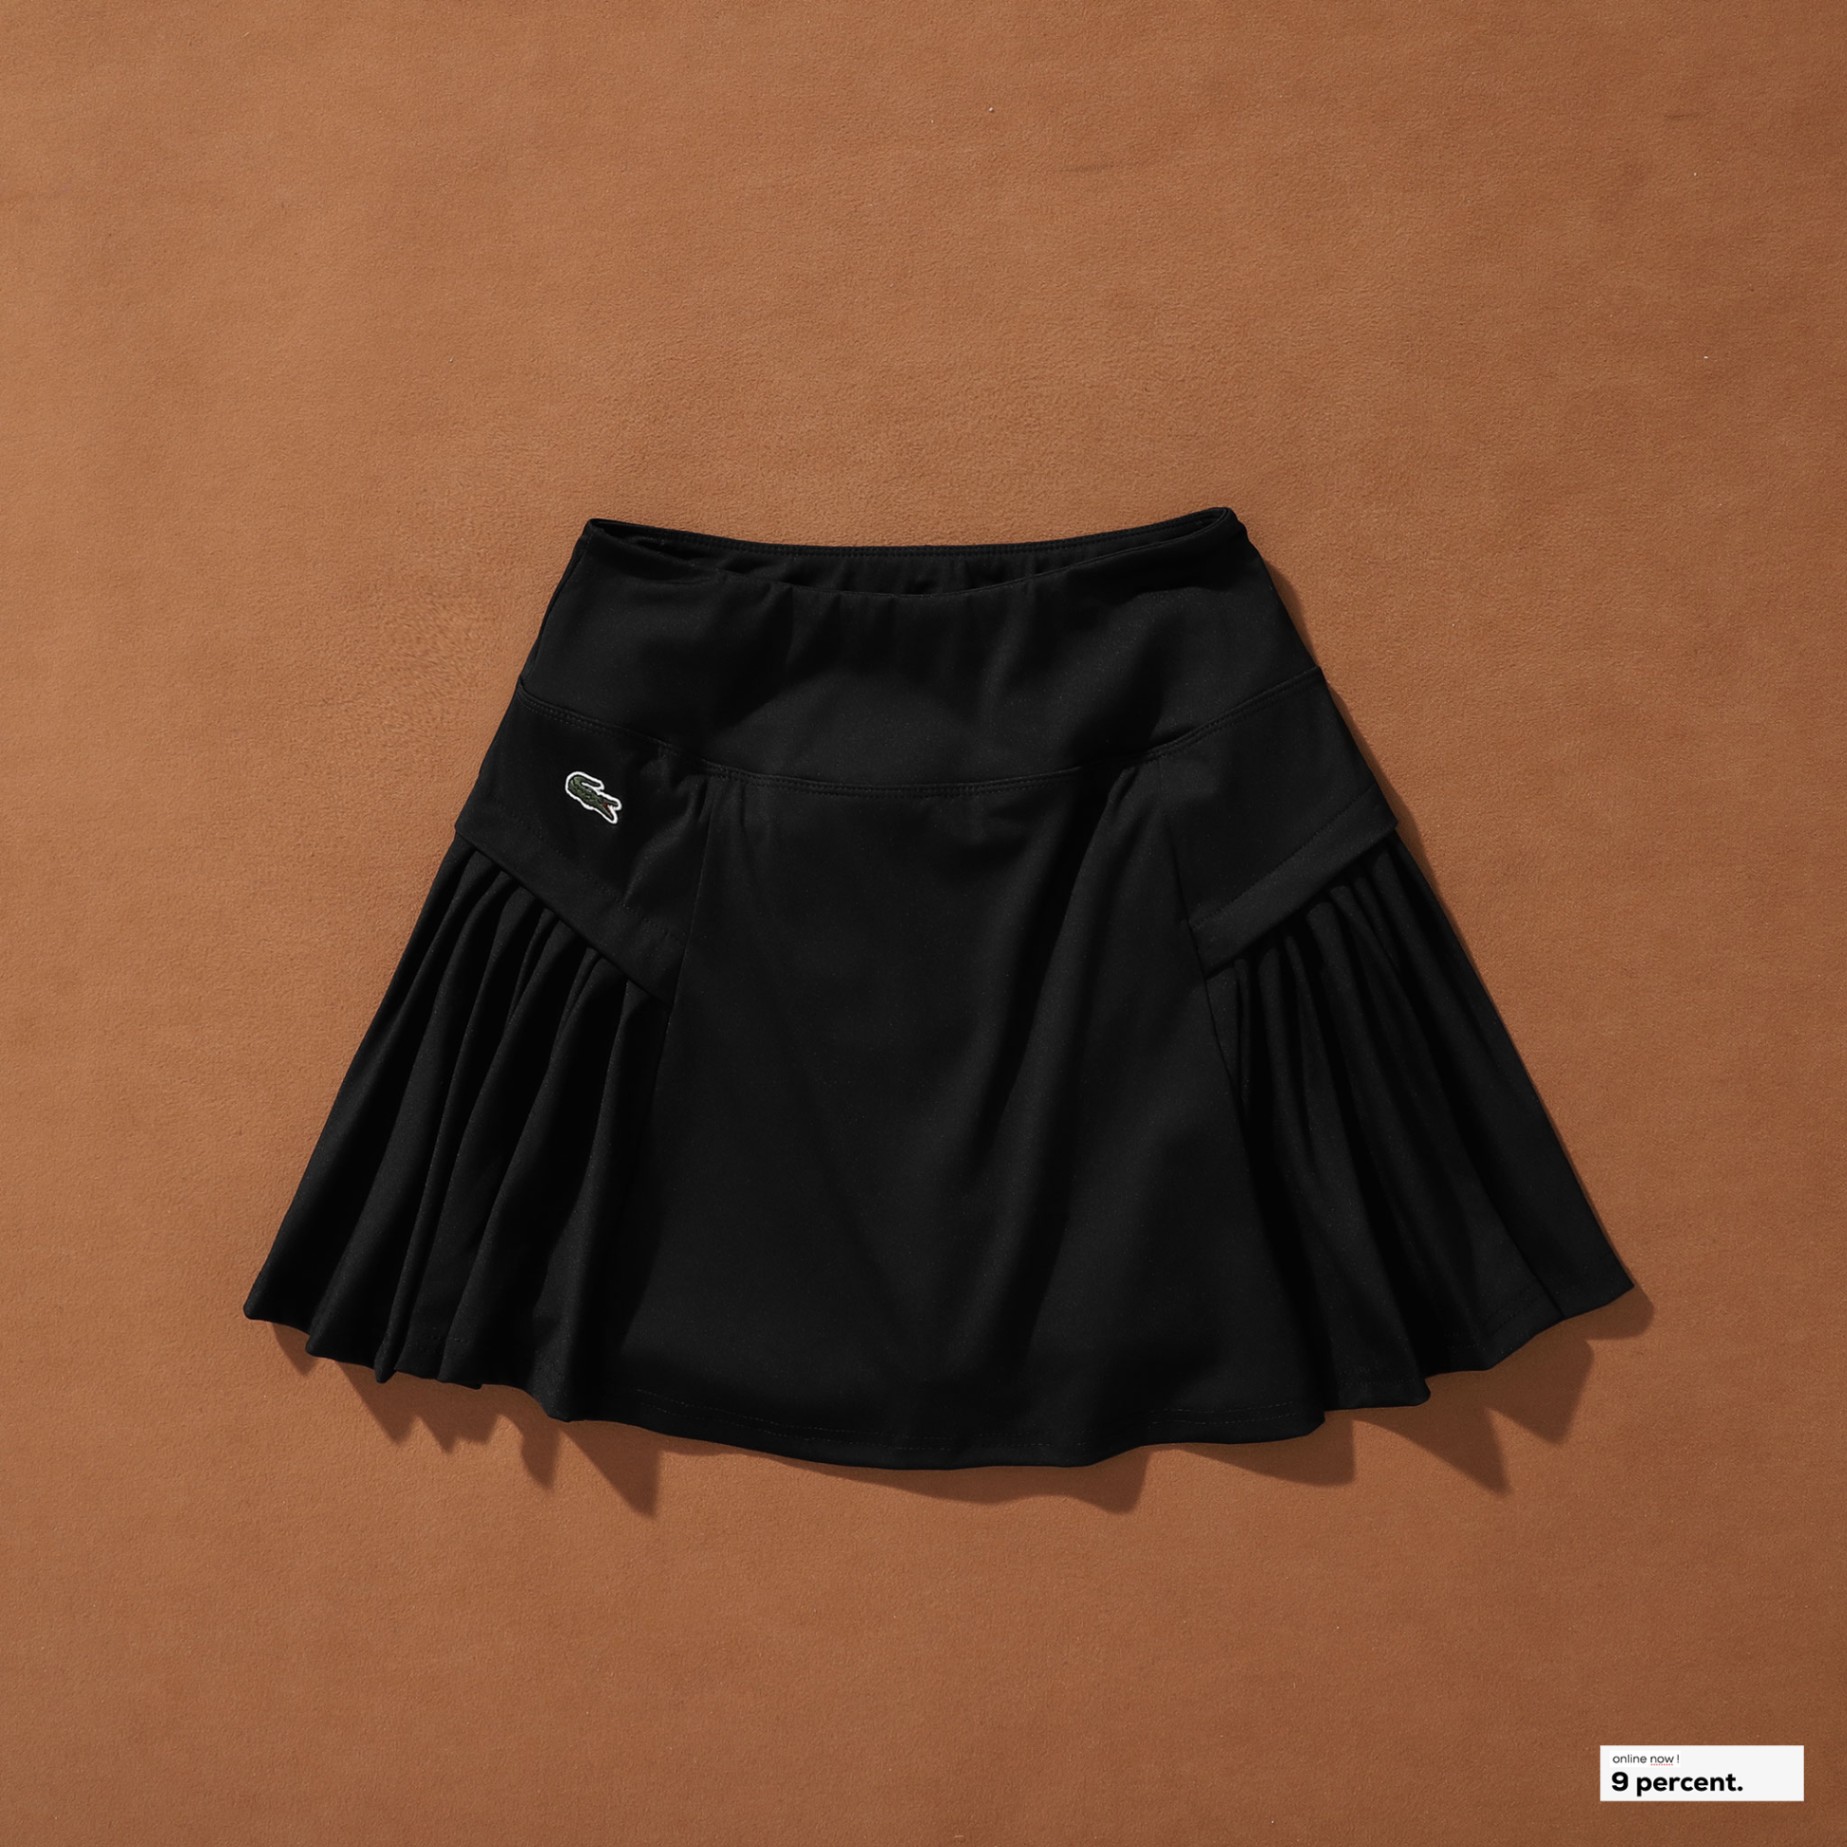 FreeShip - Xả kho cắt lỗ] Chân váy xếp ly đen Hàn Quốc siêu đẹp, dễ phối  màu | Shopee Việt Nam